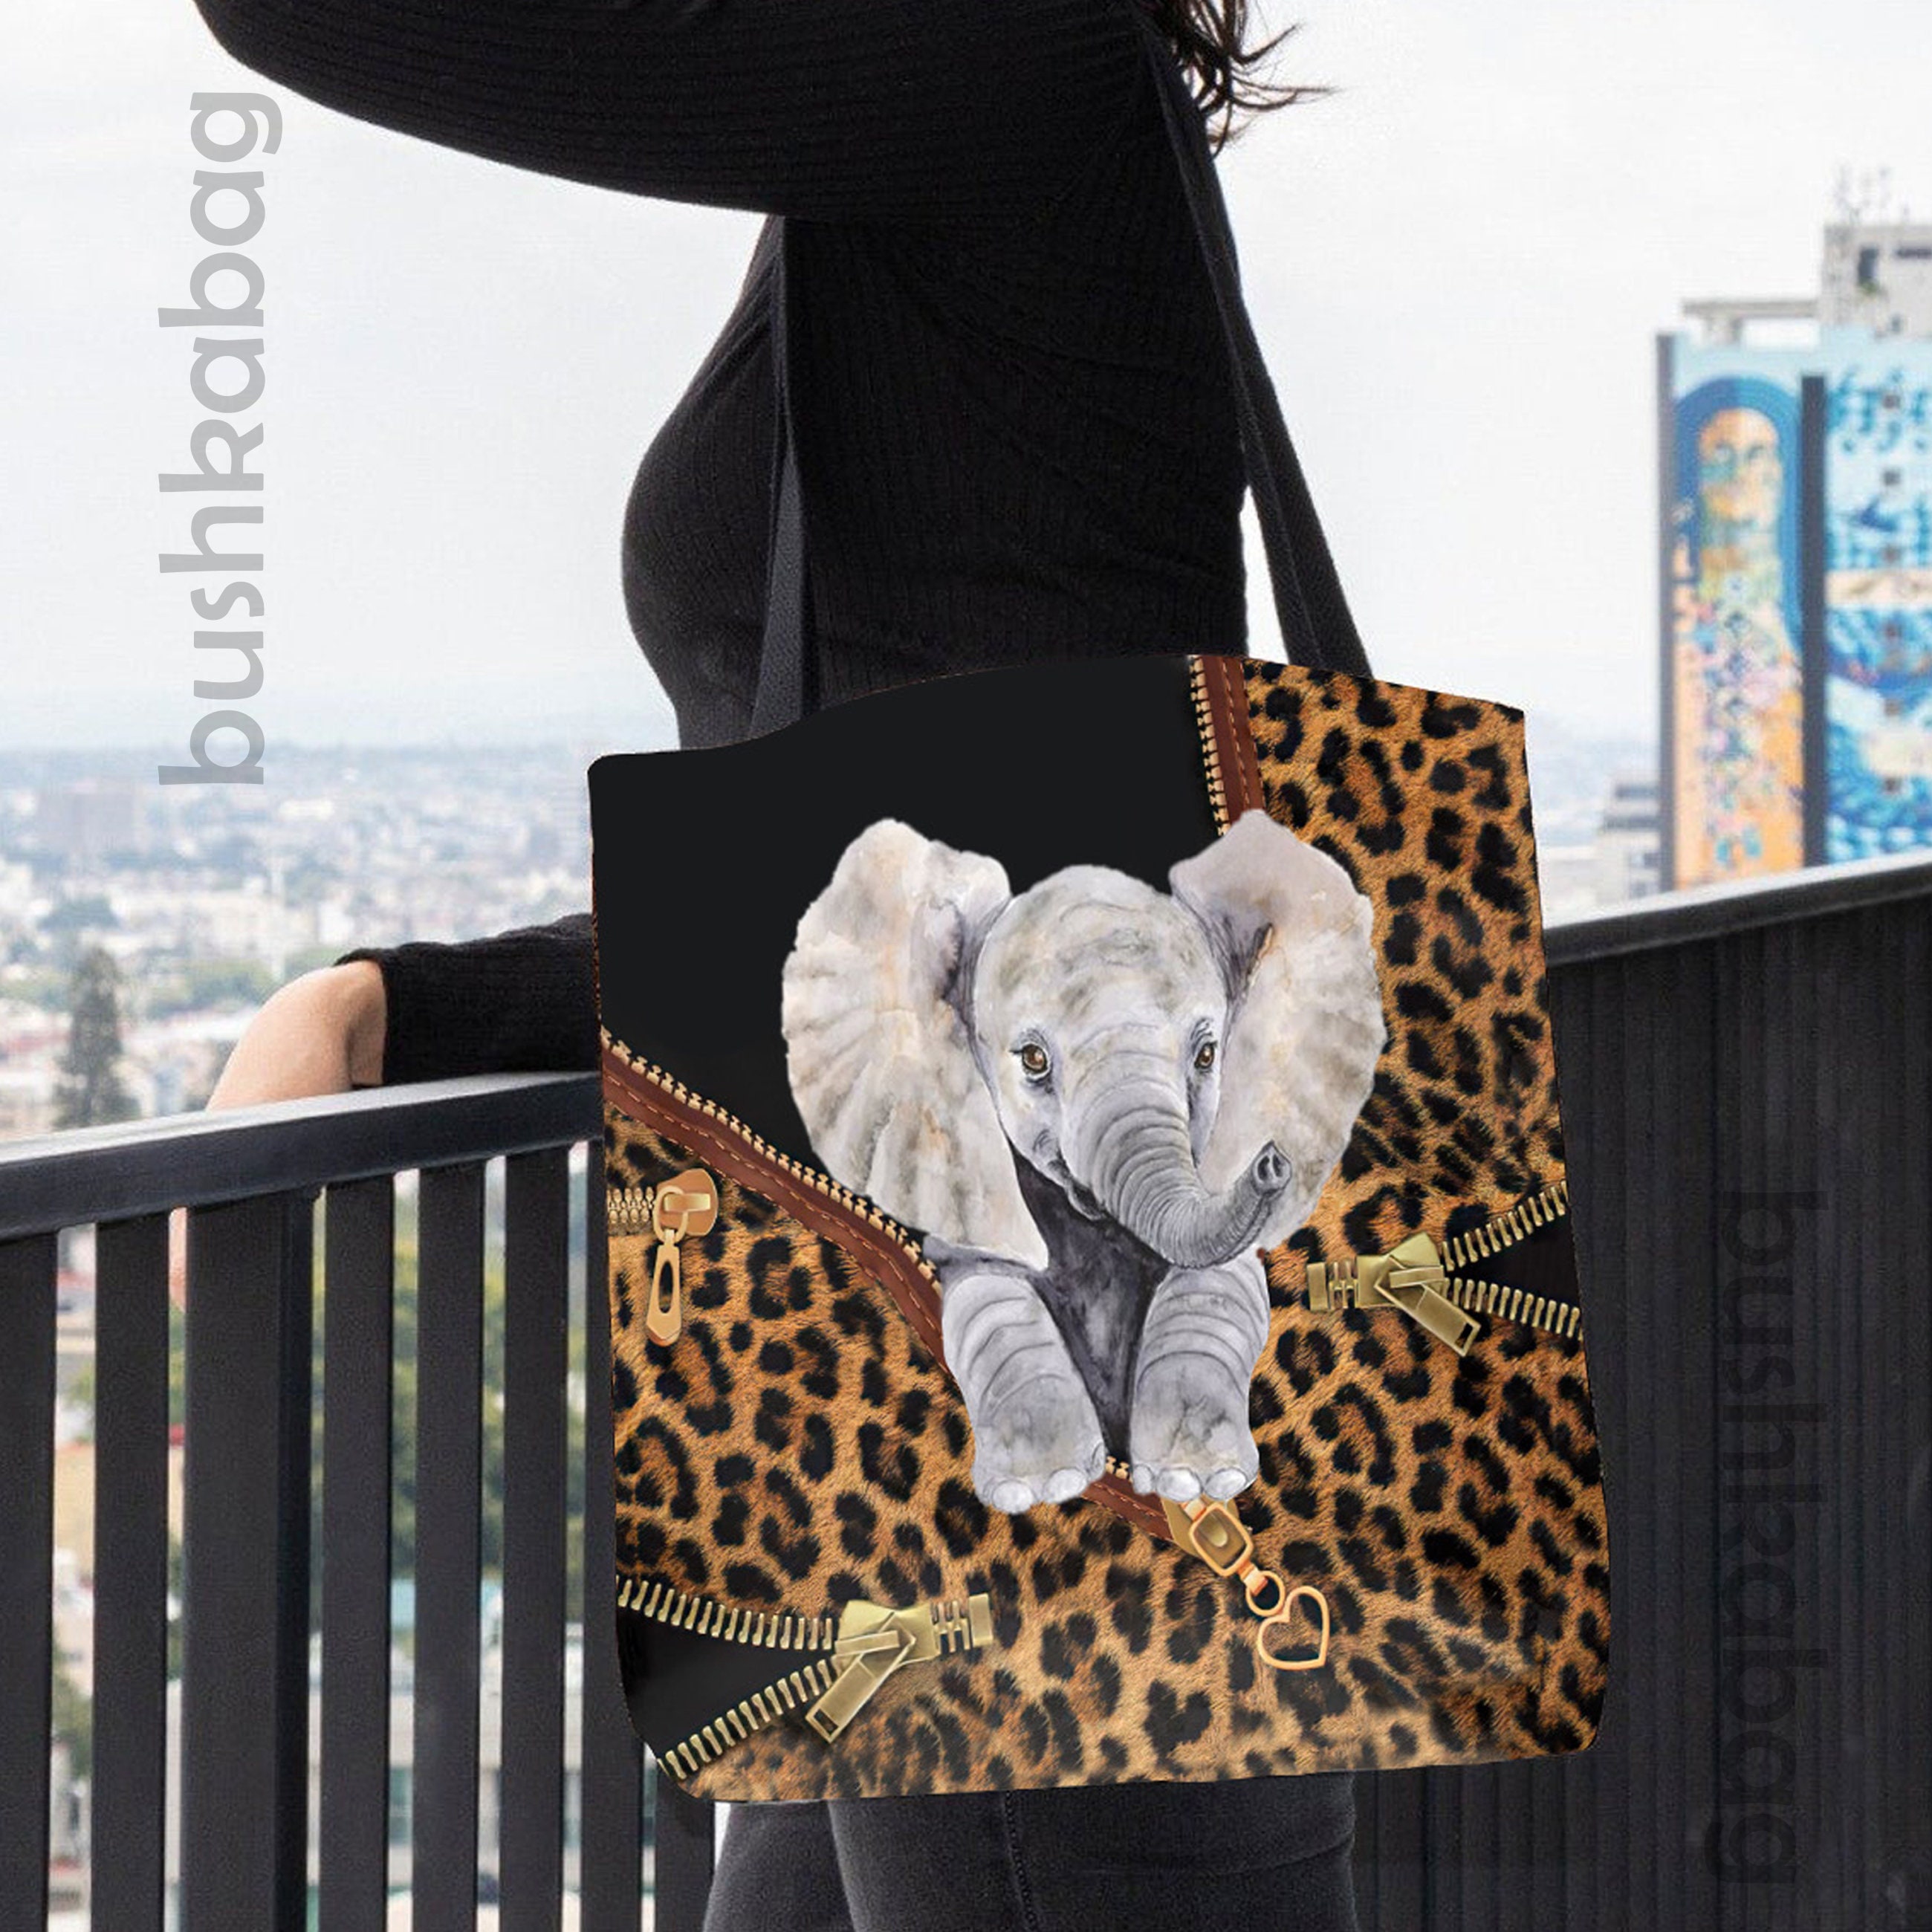 Personalized Elephant Tote Bag, Elephant Handbag, Elephant Shoulder Bag,  Elephant Lovers Gift, Elephant Bag, Vintage Elephant Gift UH340